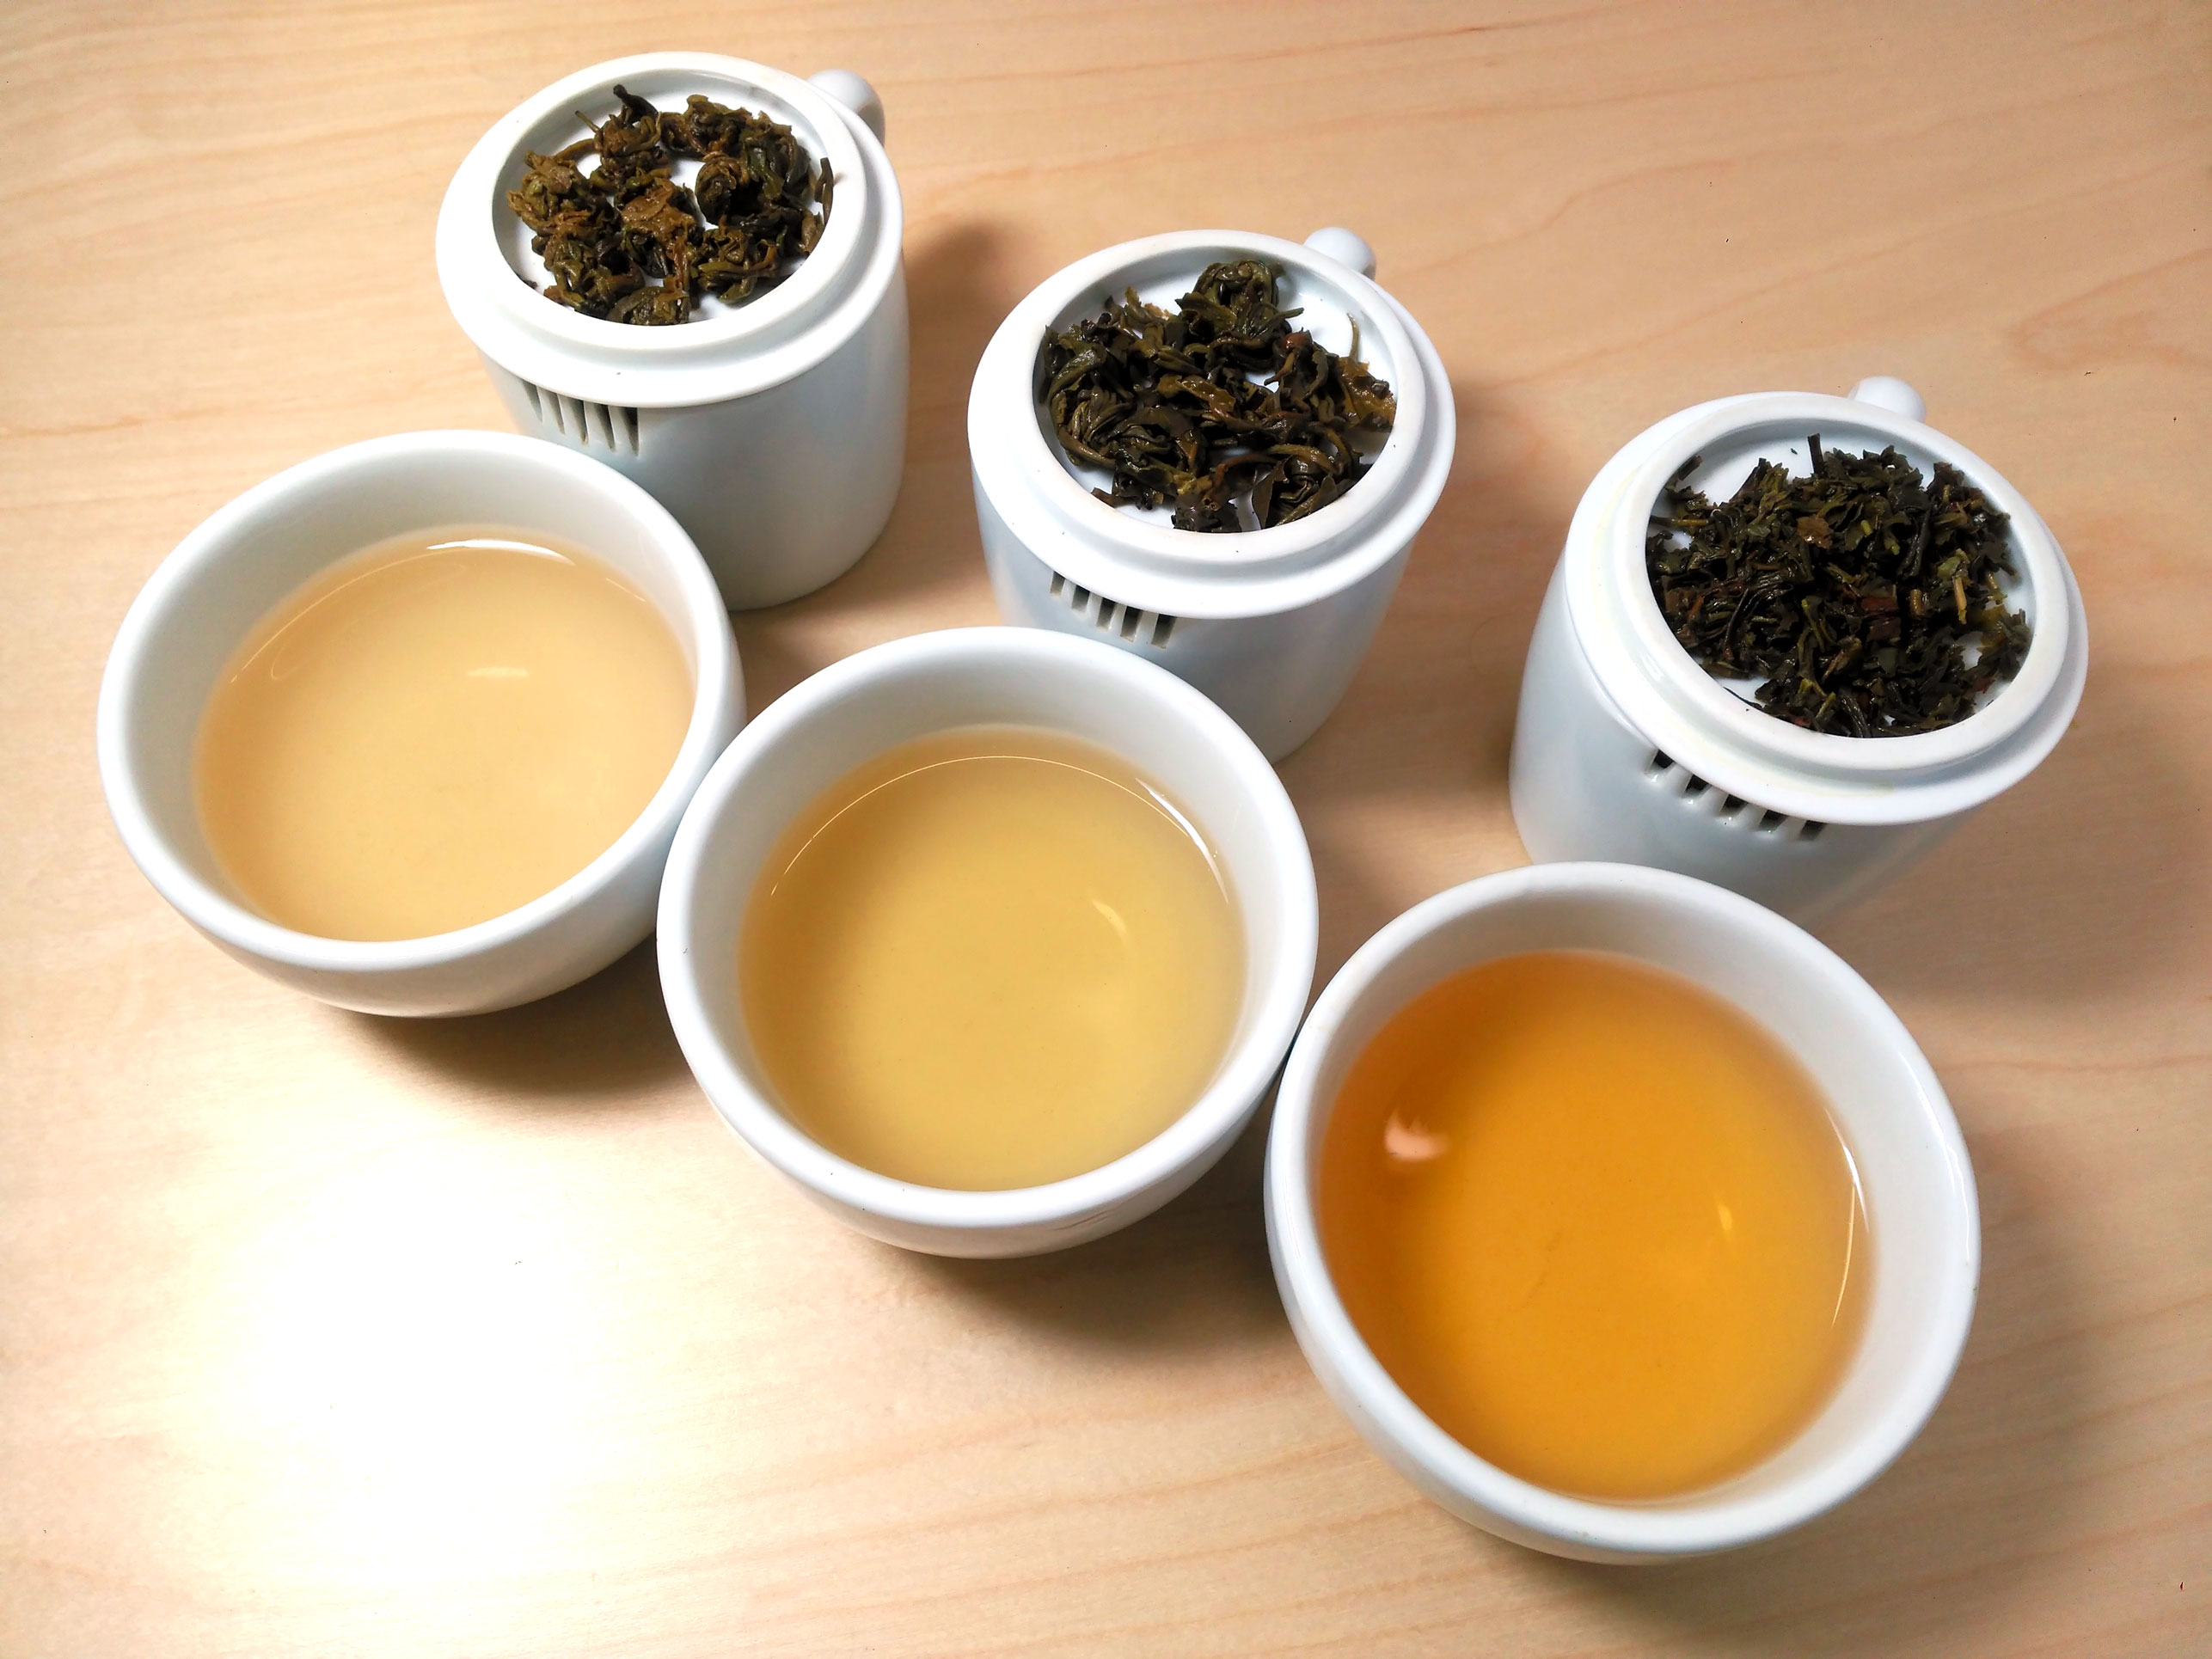 Cómo elegir el infusor correcto para el té